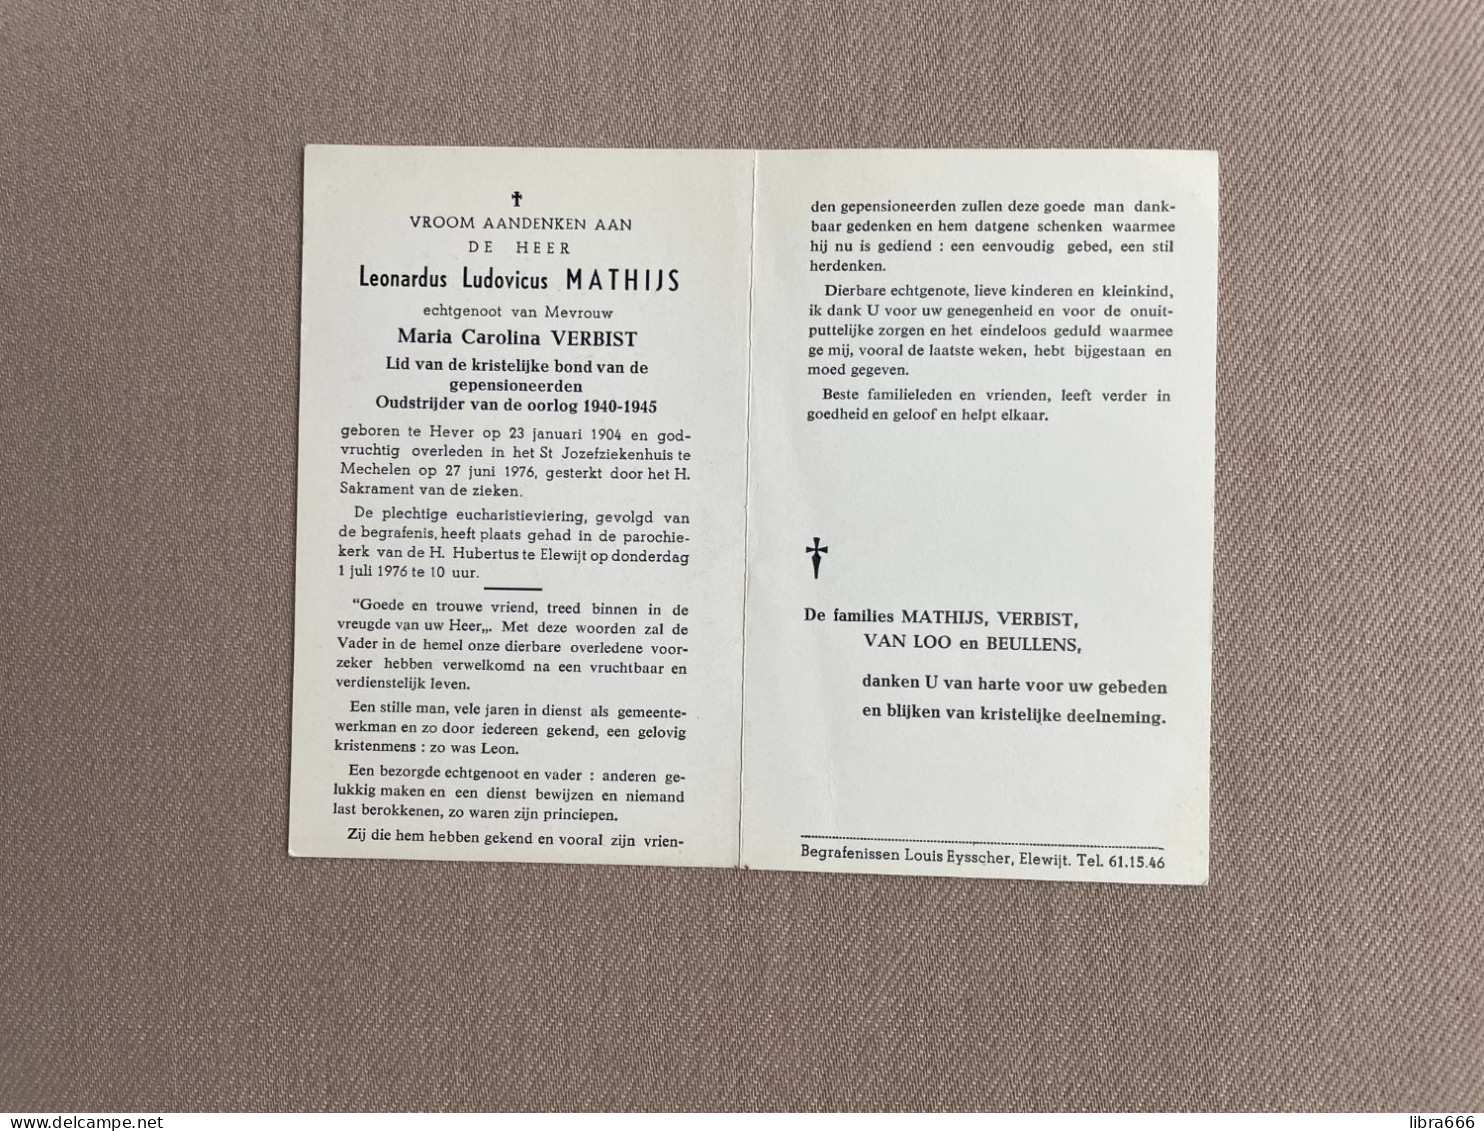 MATHIJS Leonardus Ludovicus °HEVER 1904 +MECHELEN 1976 - VERBIST - VAN LOO BEULLENS - Oudstrijder 1940-1945 - Obituary Notices